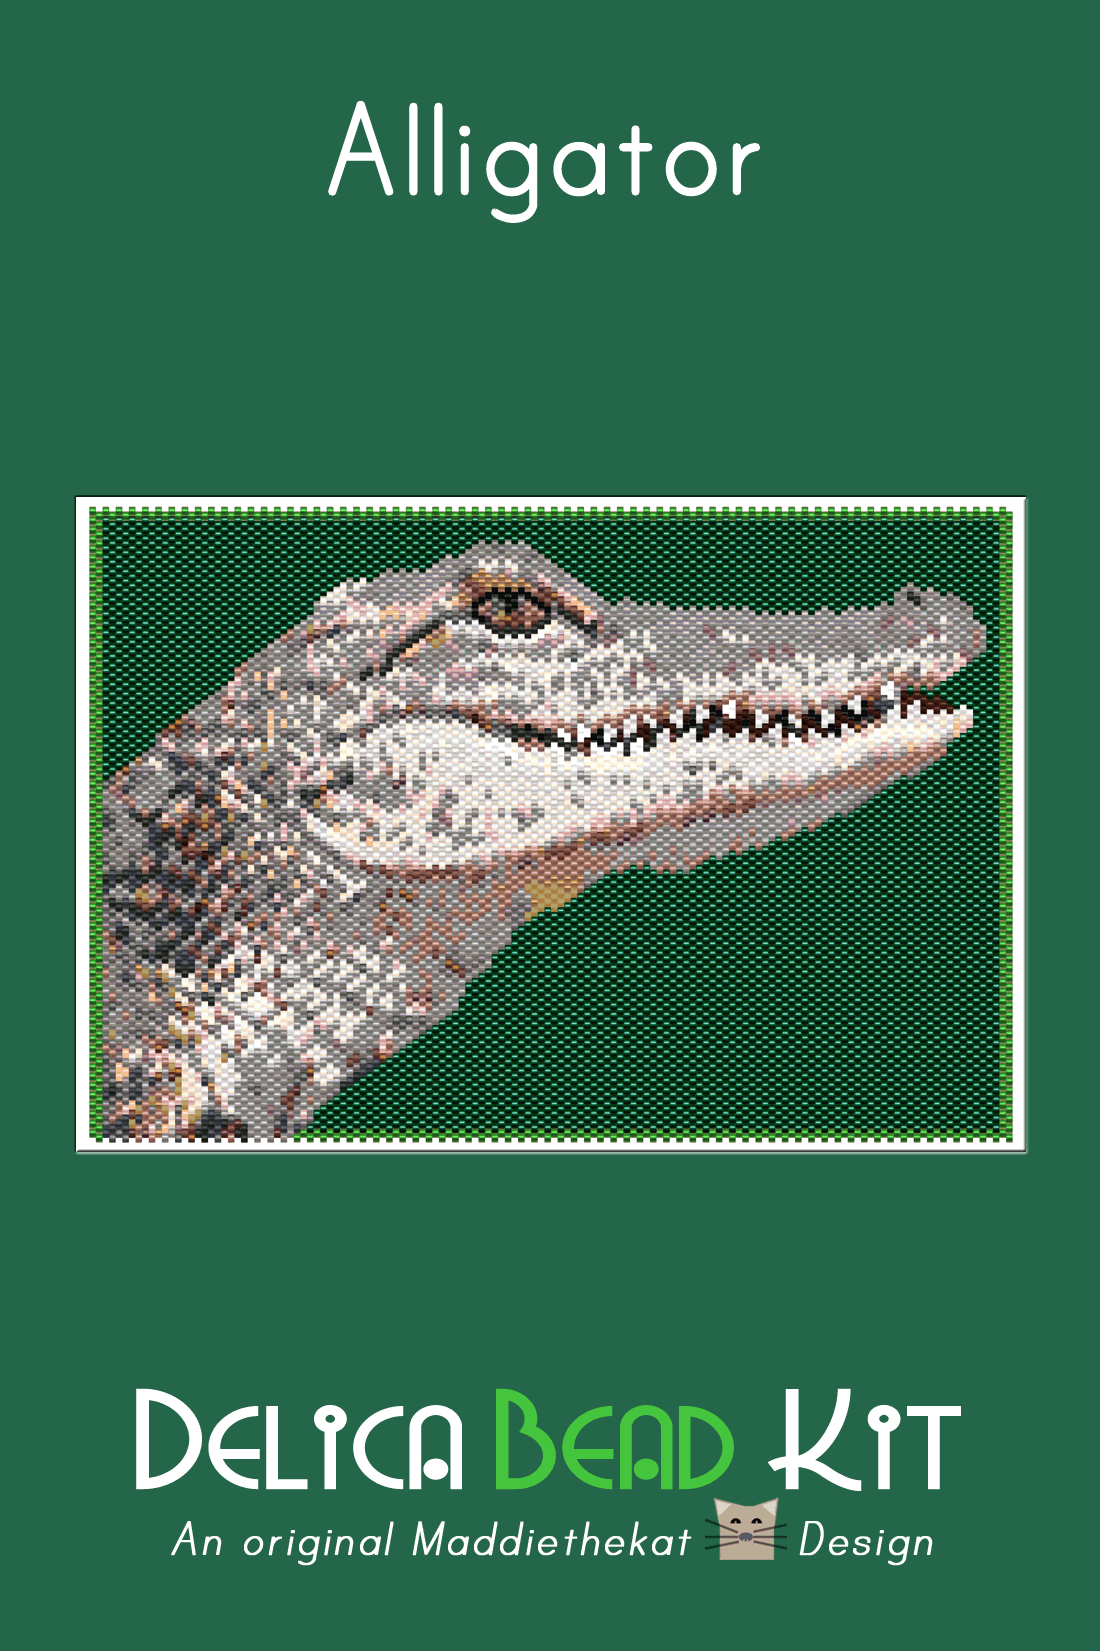 Alligator Larger Panel Peyote Bead Pattern PDF or KIT DIY